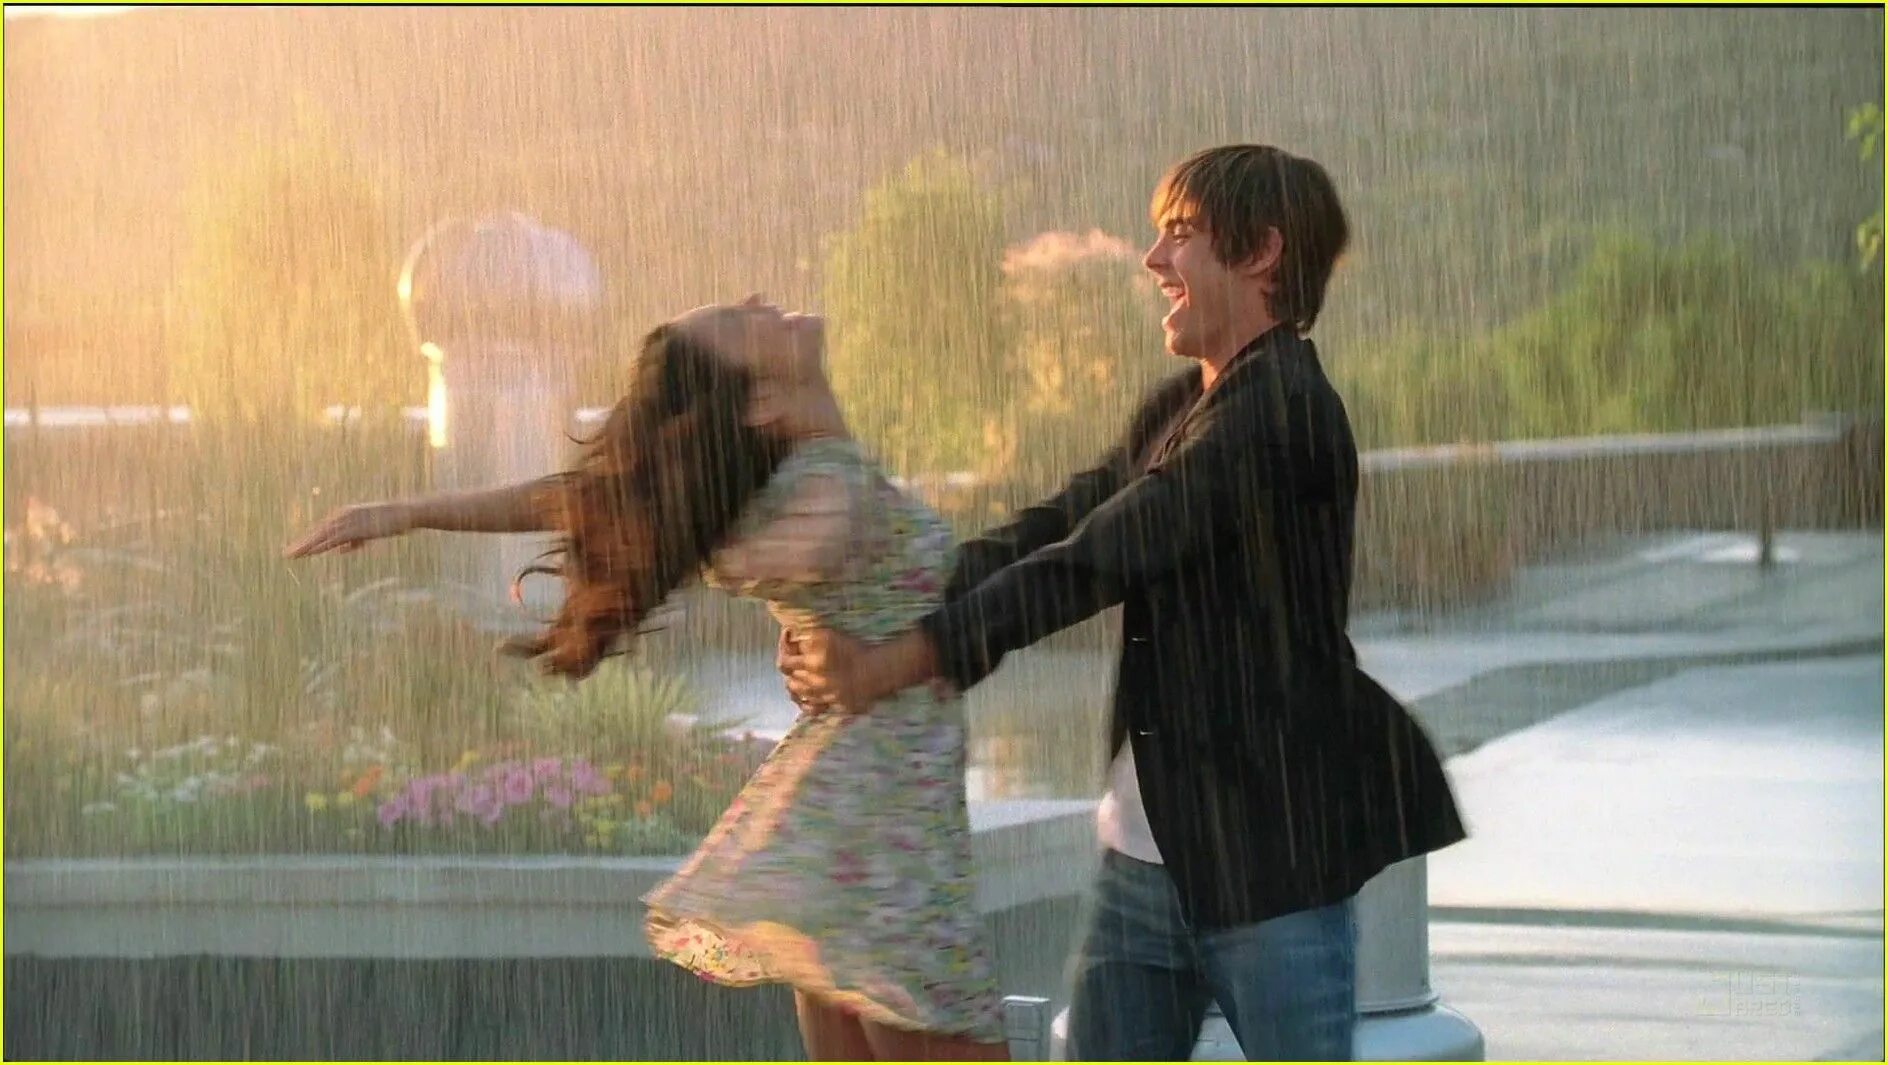 Слушать песню друзьям любить. Вивиан Грин танцевать под дождём. Влюблённые под дождём. Прогулка вдвоем под дождем. Пара танцует под дождем.